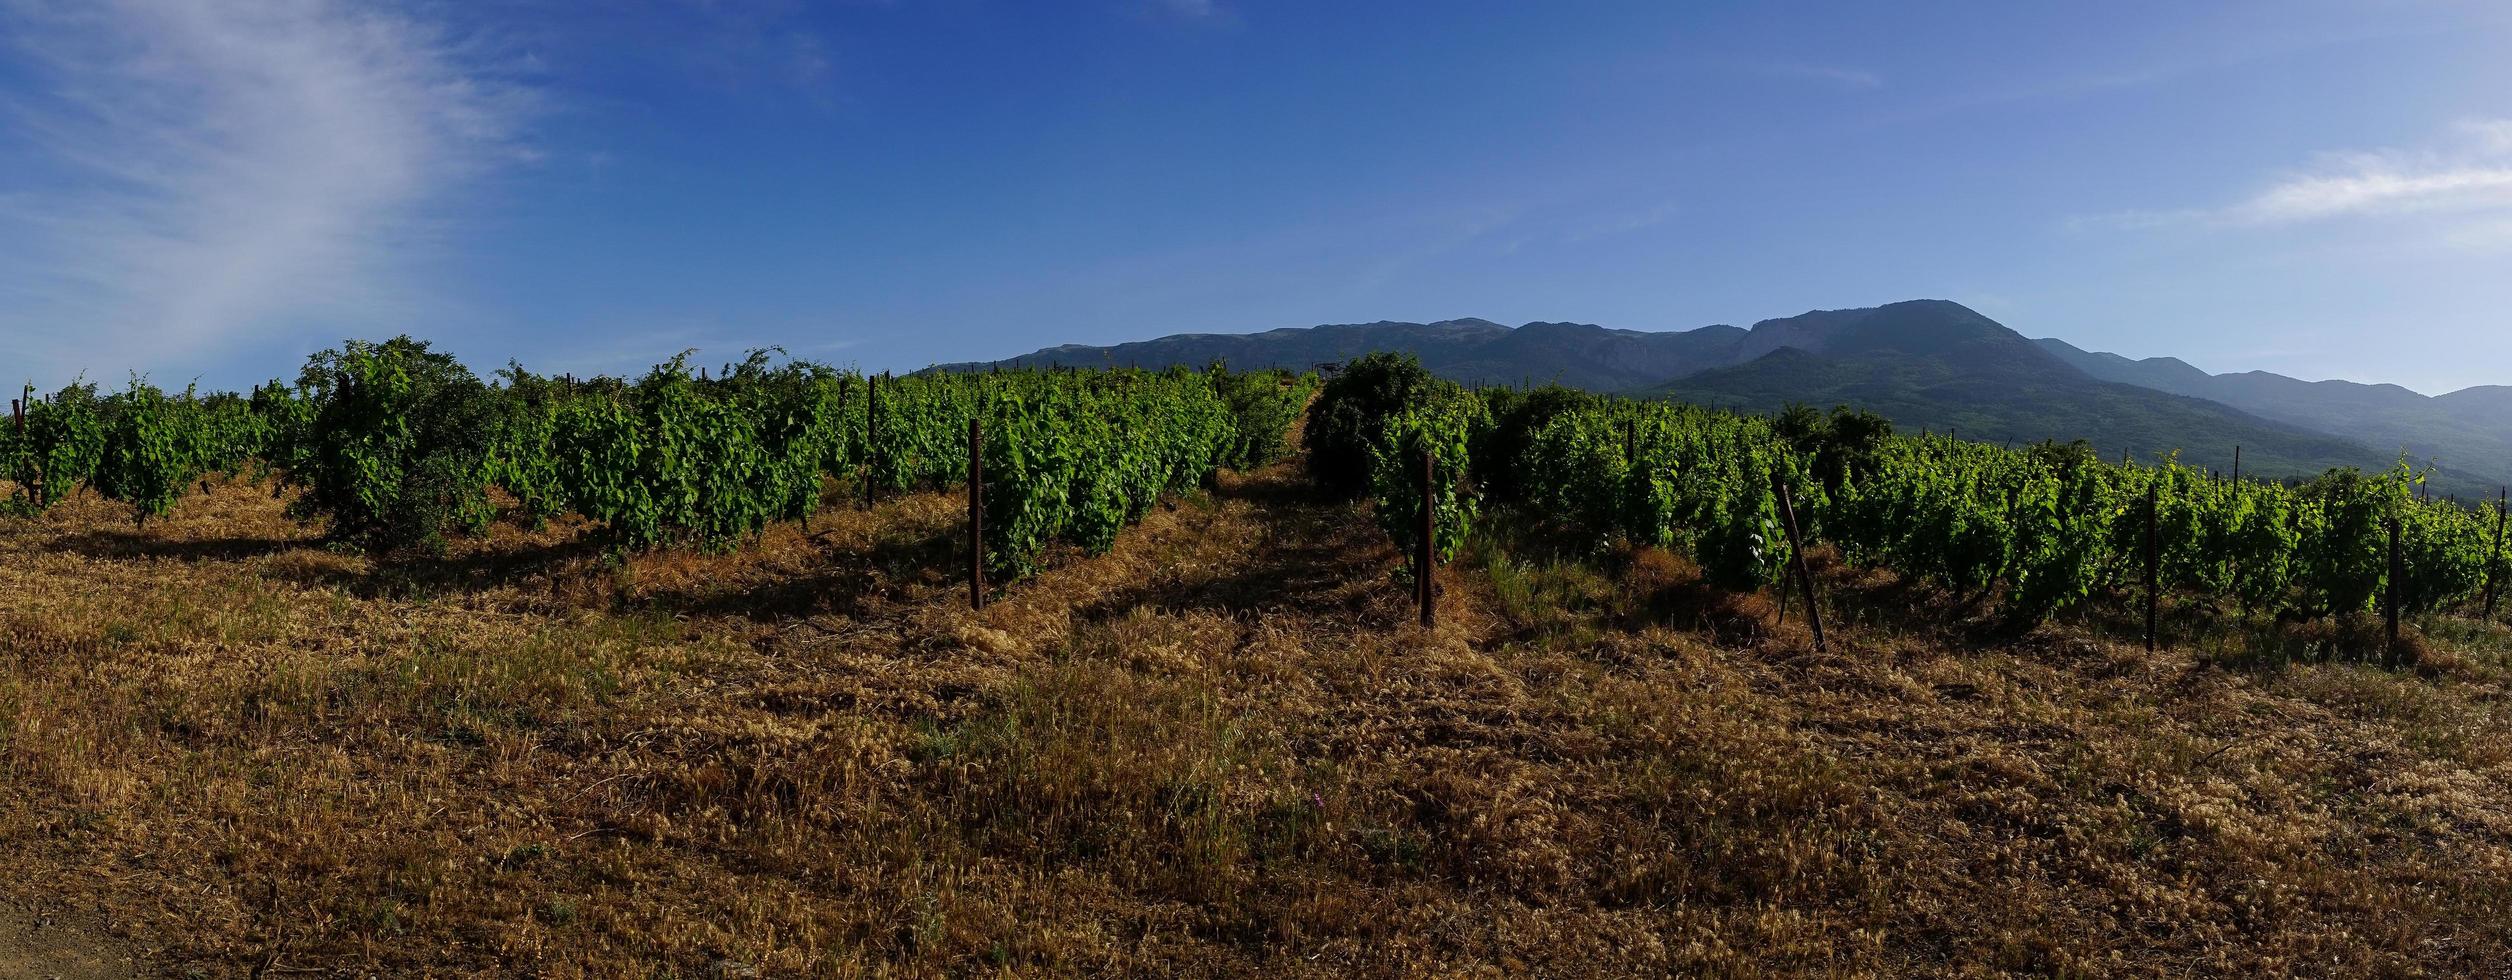 a paisagem natural das vinhas da criméia. foto